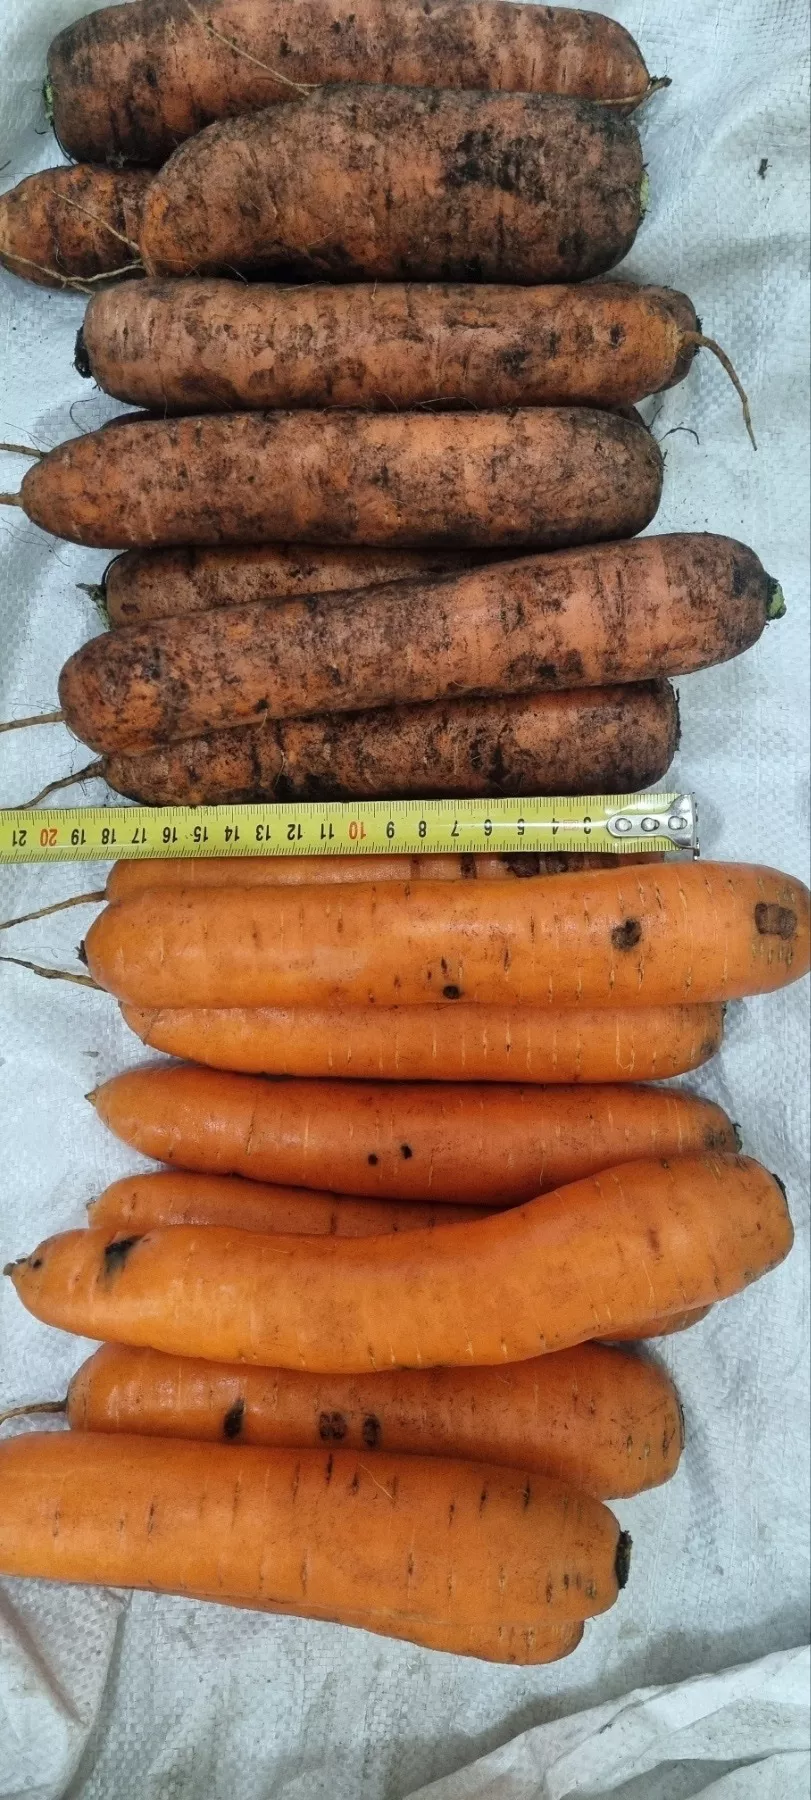 морковь  свежая в Республике Беларусь 6